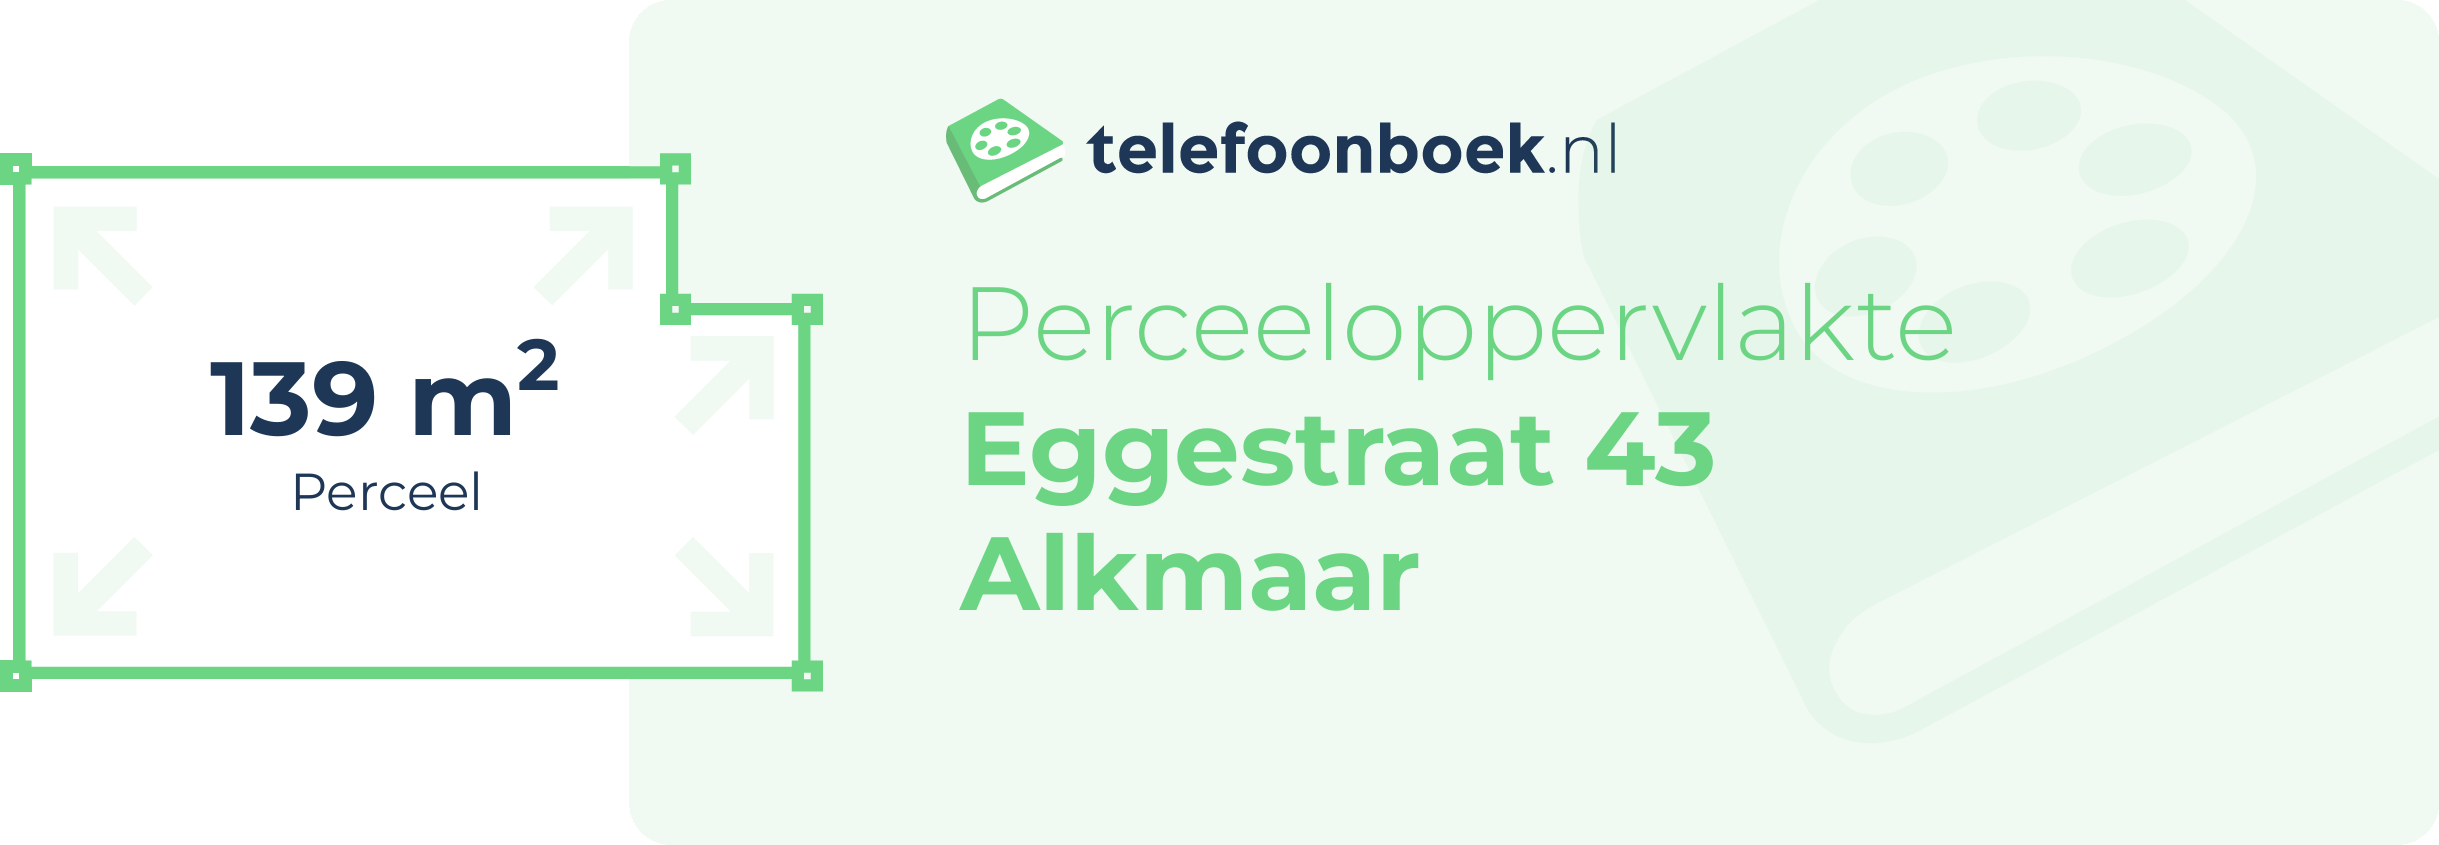 Perceeloppervlakte Eggestraat 43 Alkmaar